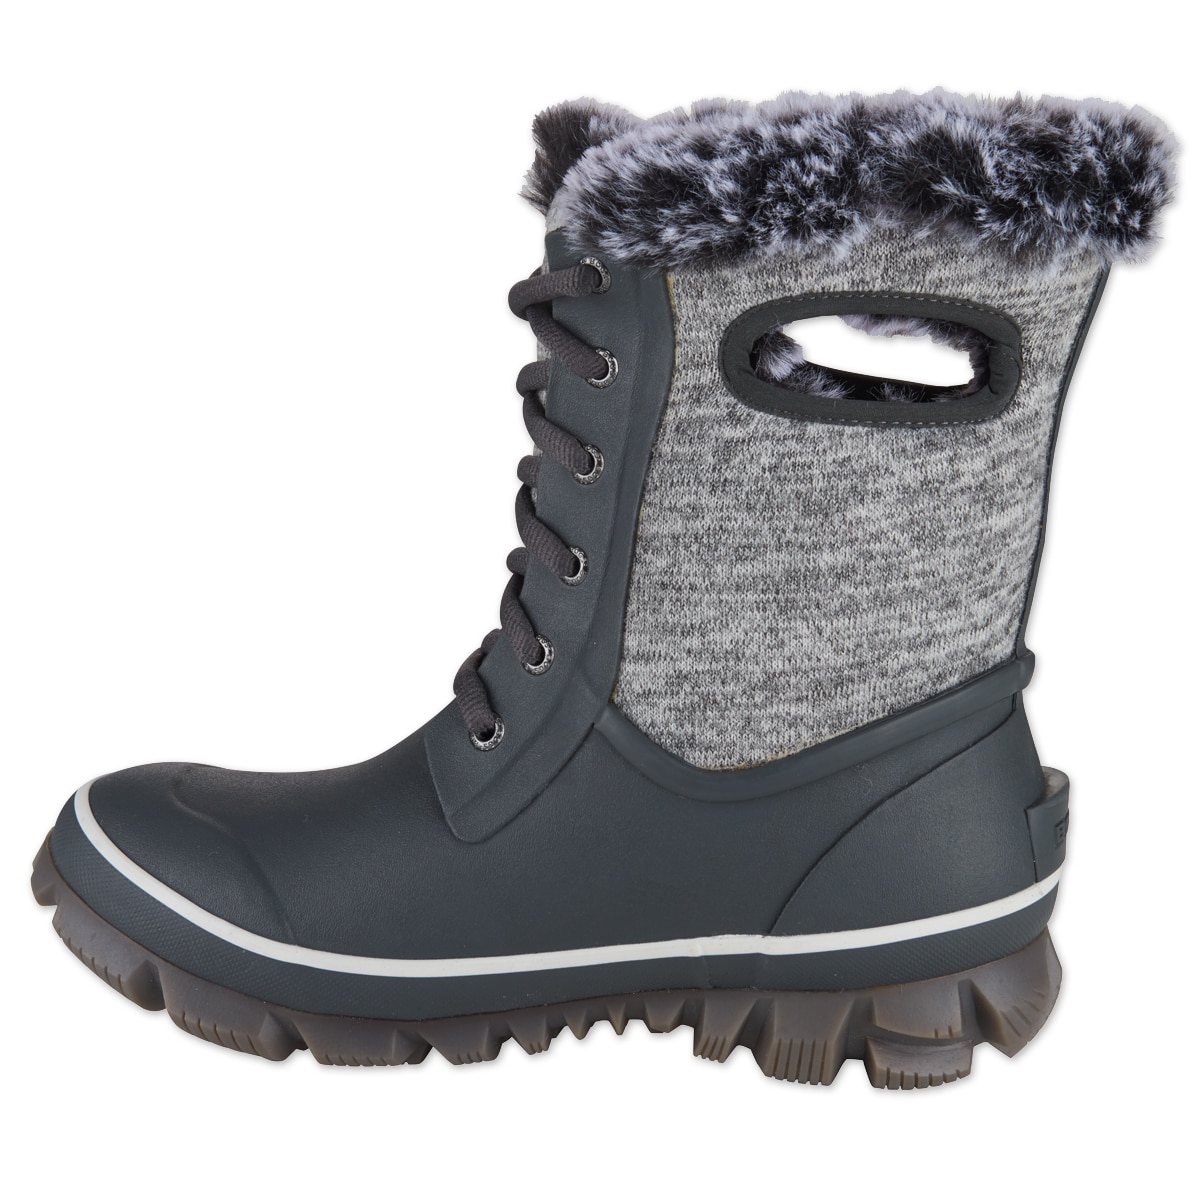 bogs waterproof winter boots